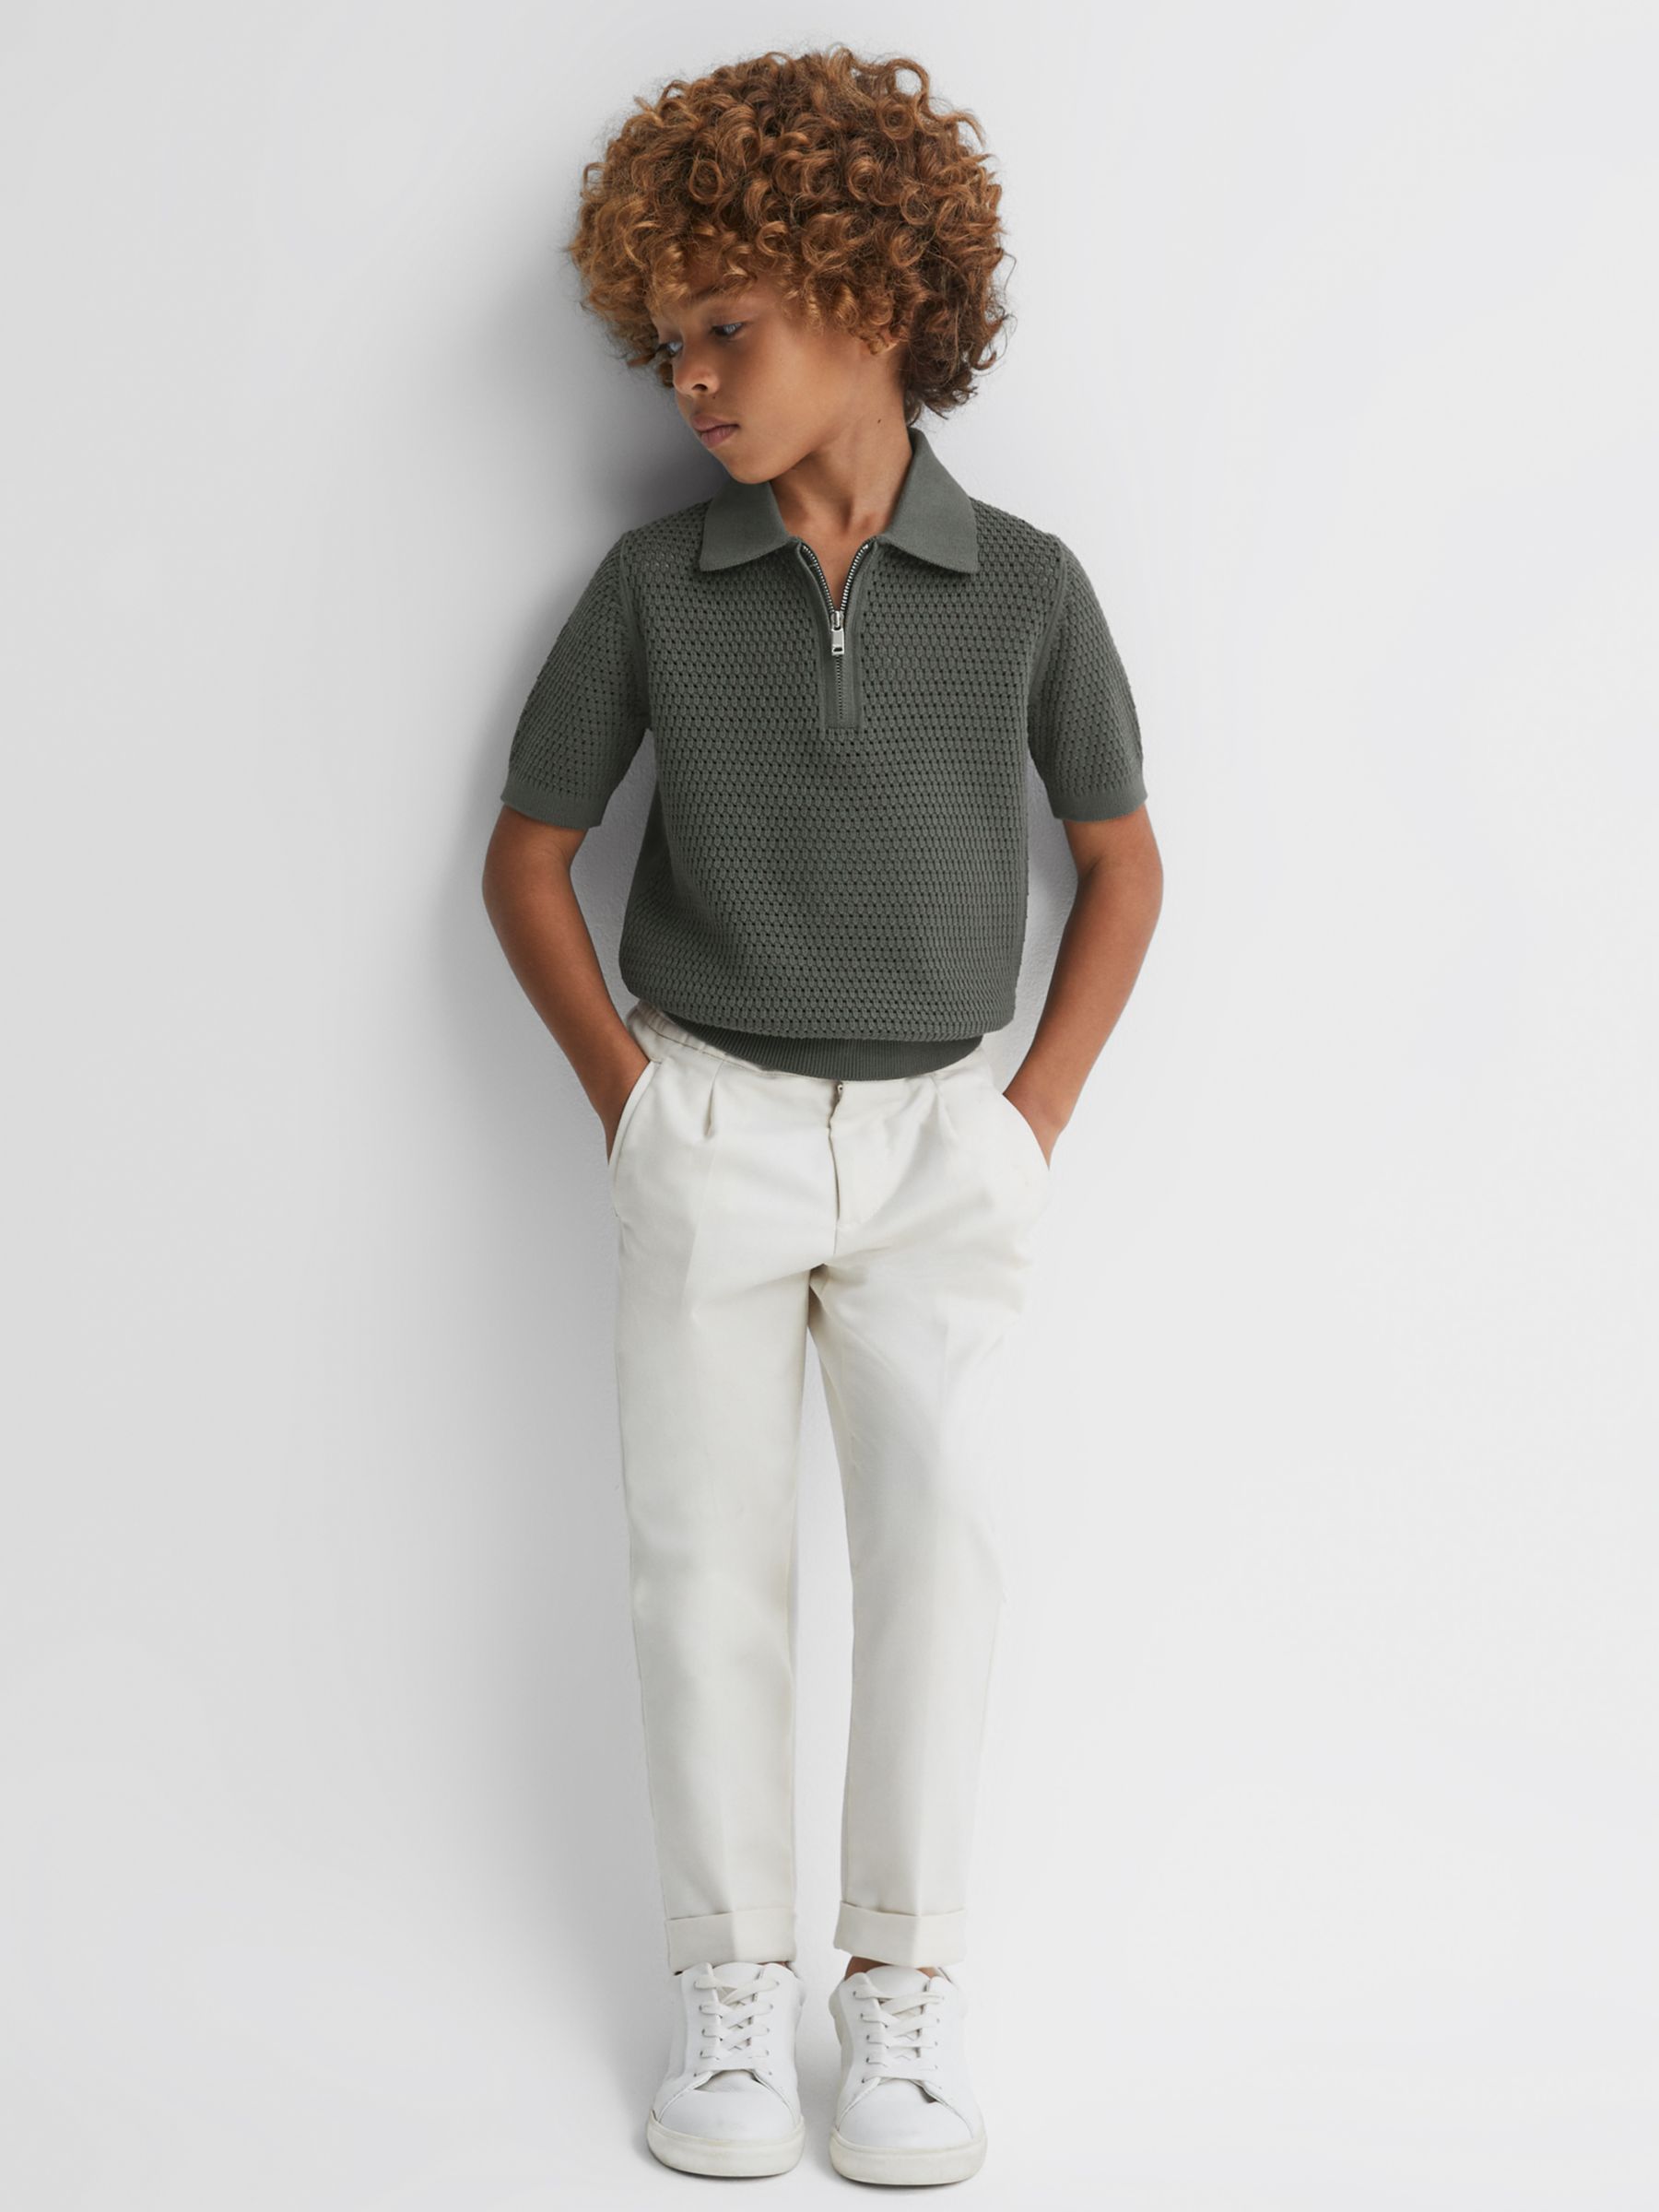 Reiss Kids' Burnham Half Zip Textured Polo Shirt, Dark Sage, 3-4 years